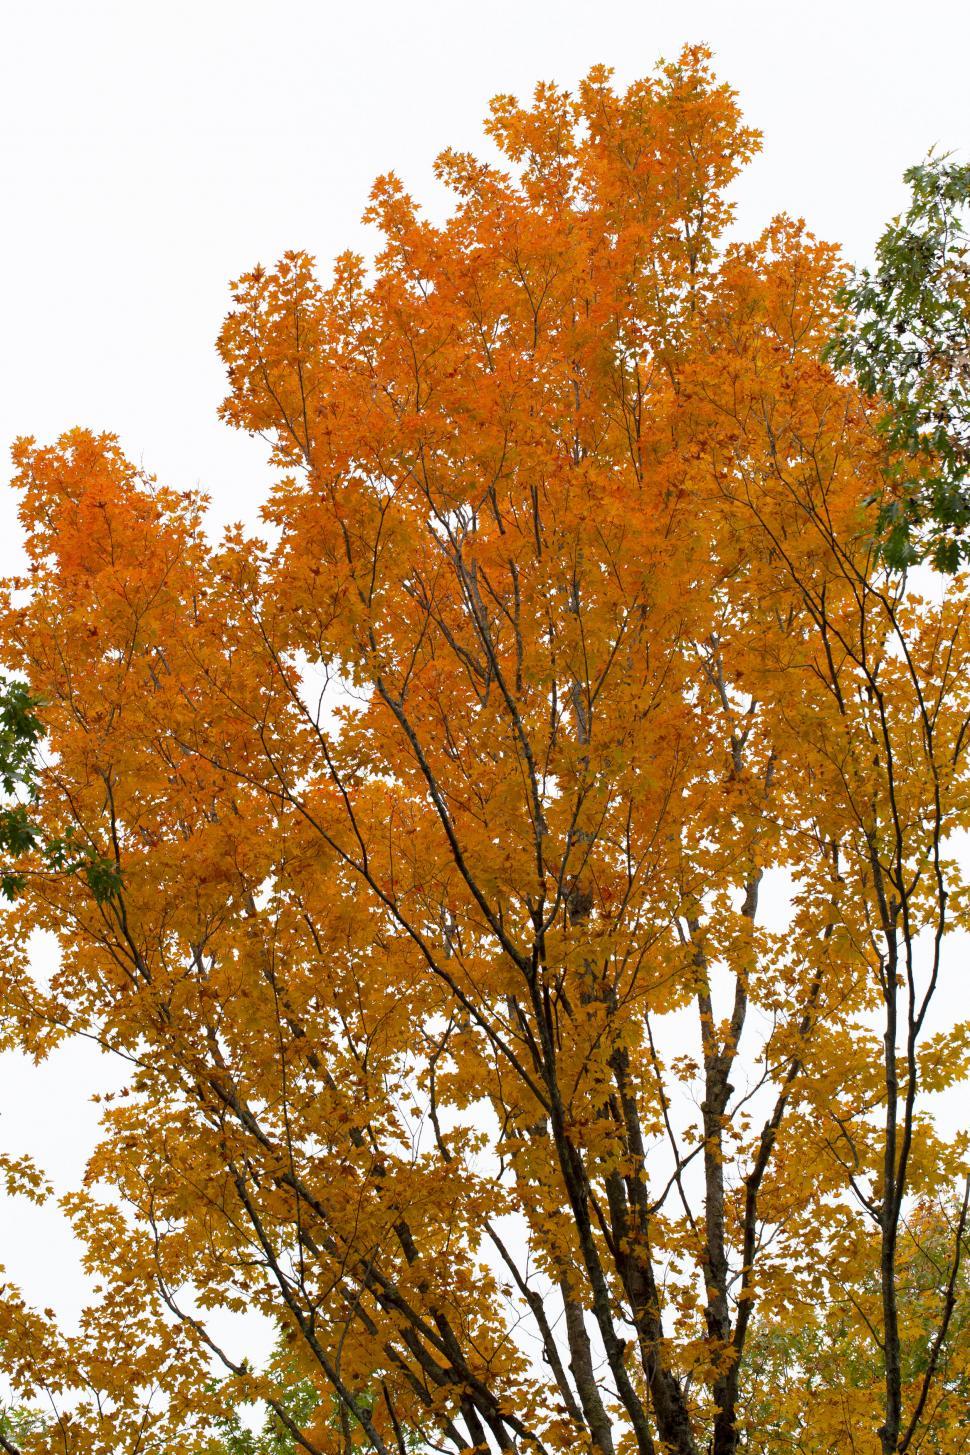 Free Image of Vibrant orange autumn leaves on trees 